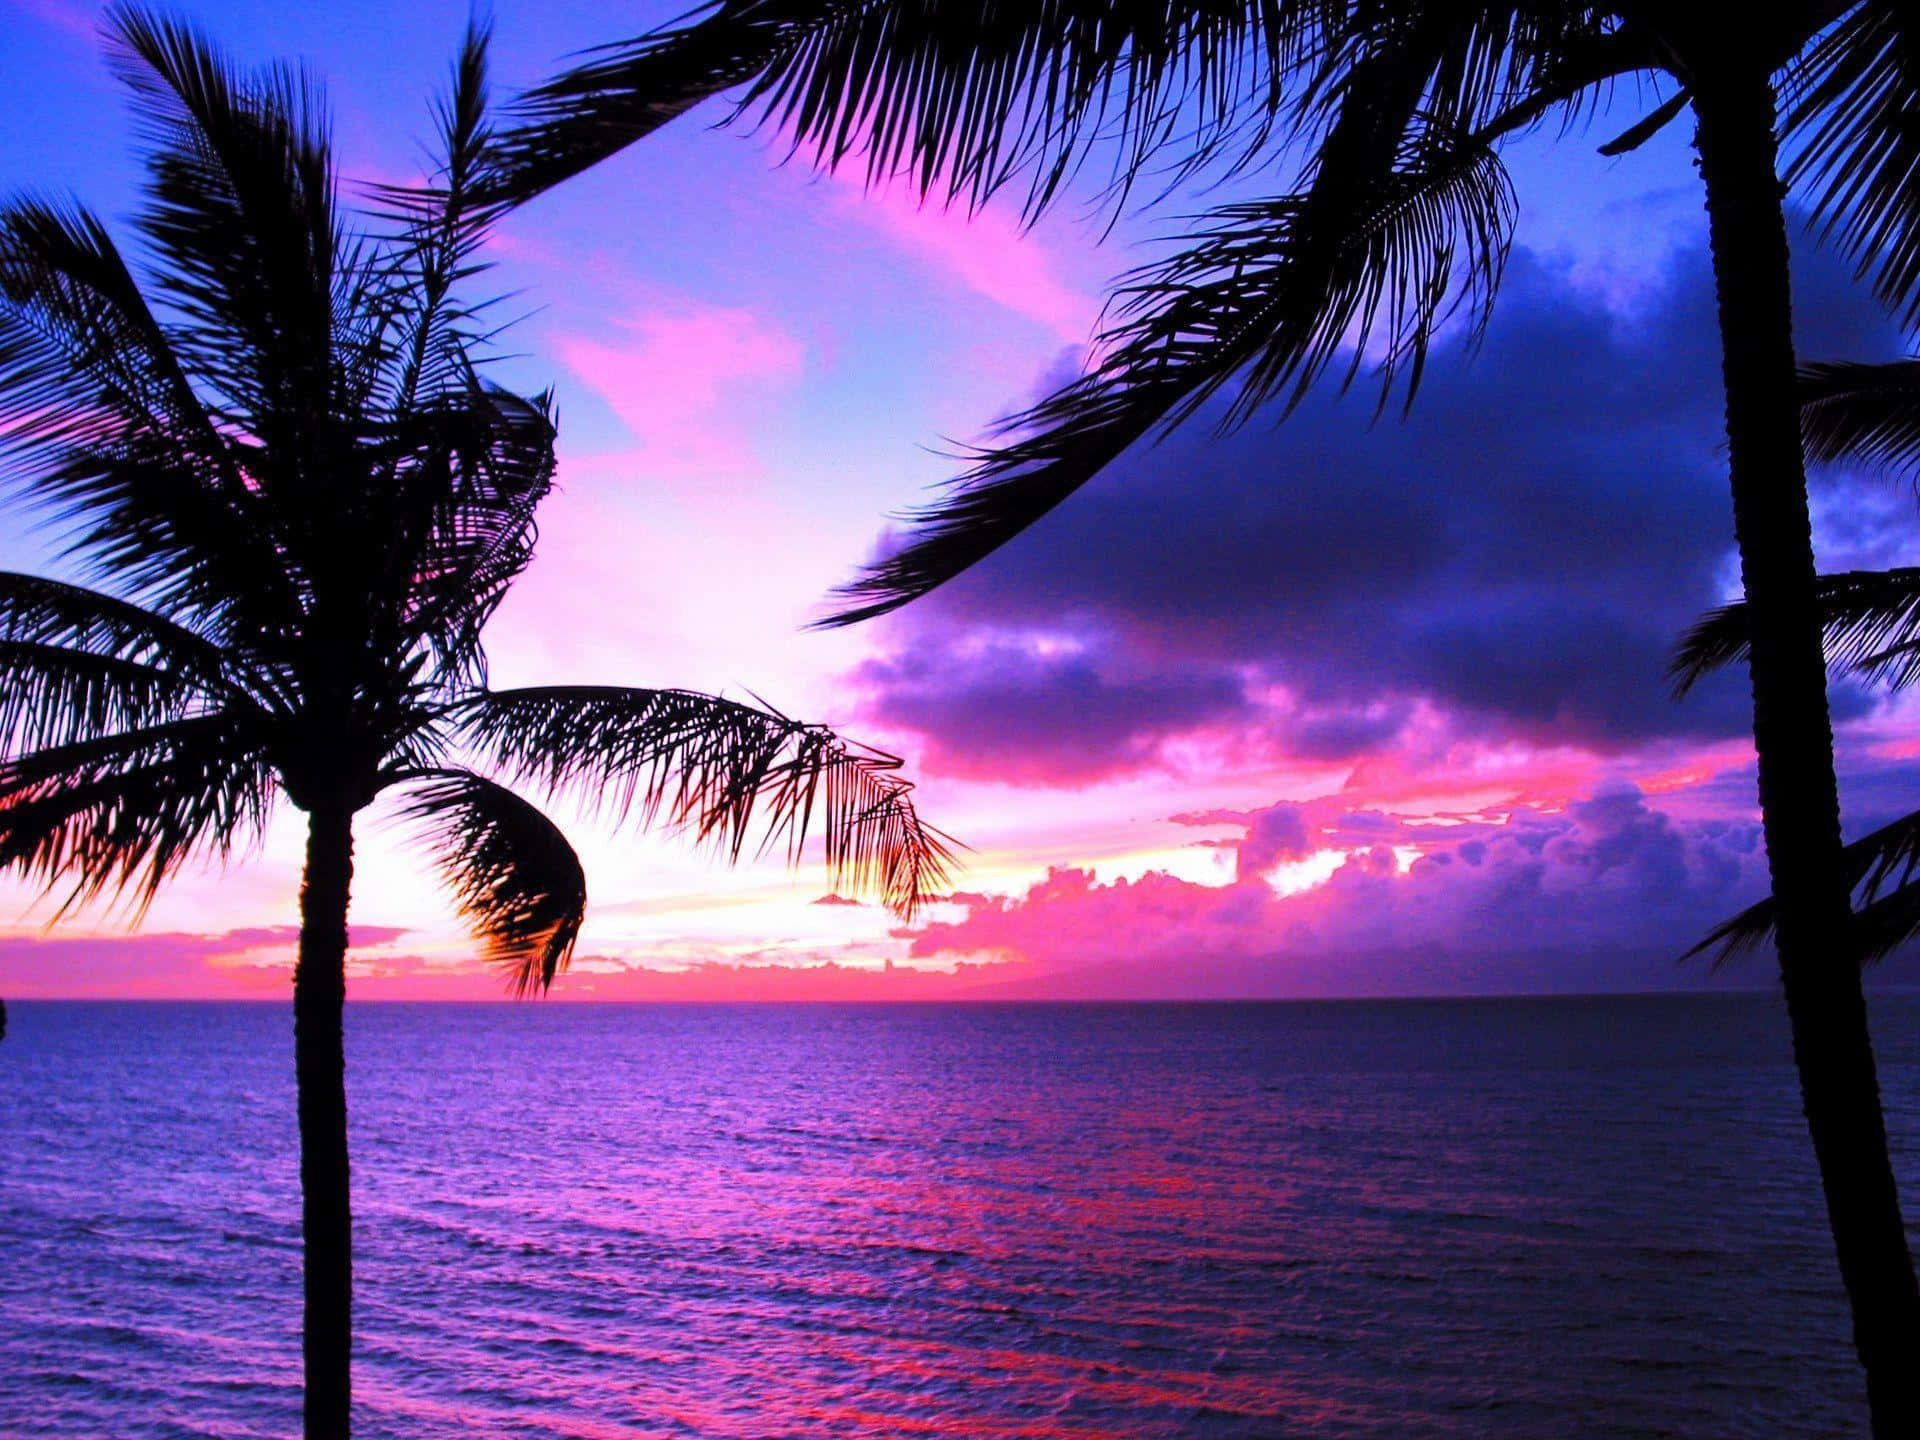 Nyd det vidunderlige syn af en hawaiisk solnedgang med pink og lilla nuancer. Wallpaper